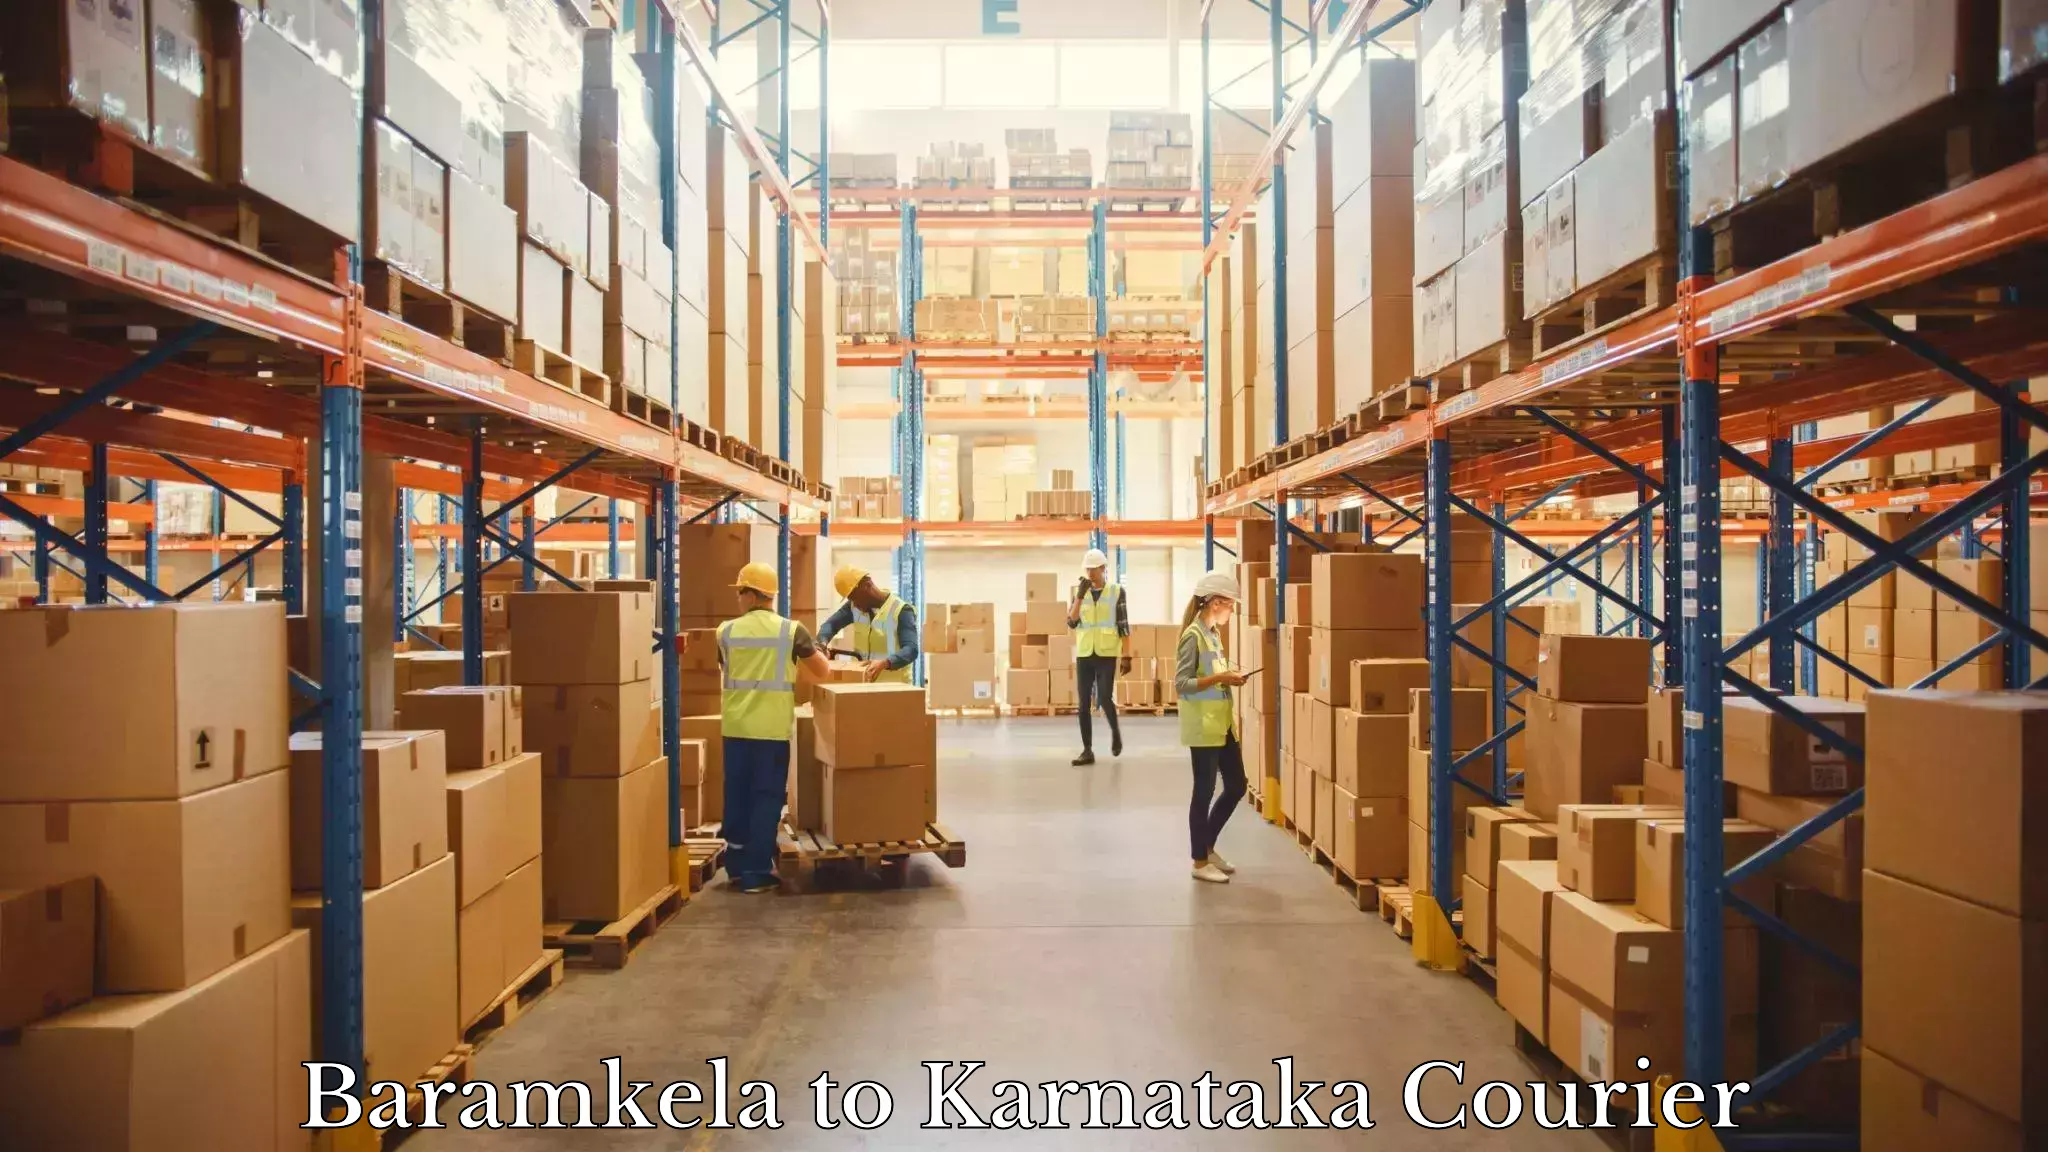 Reliable courier service Baramkela to Yenepoya Mangalore